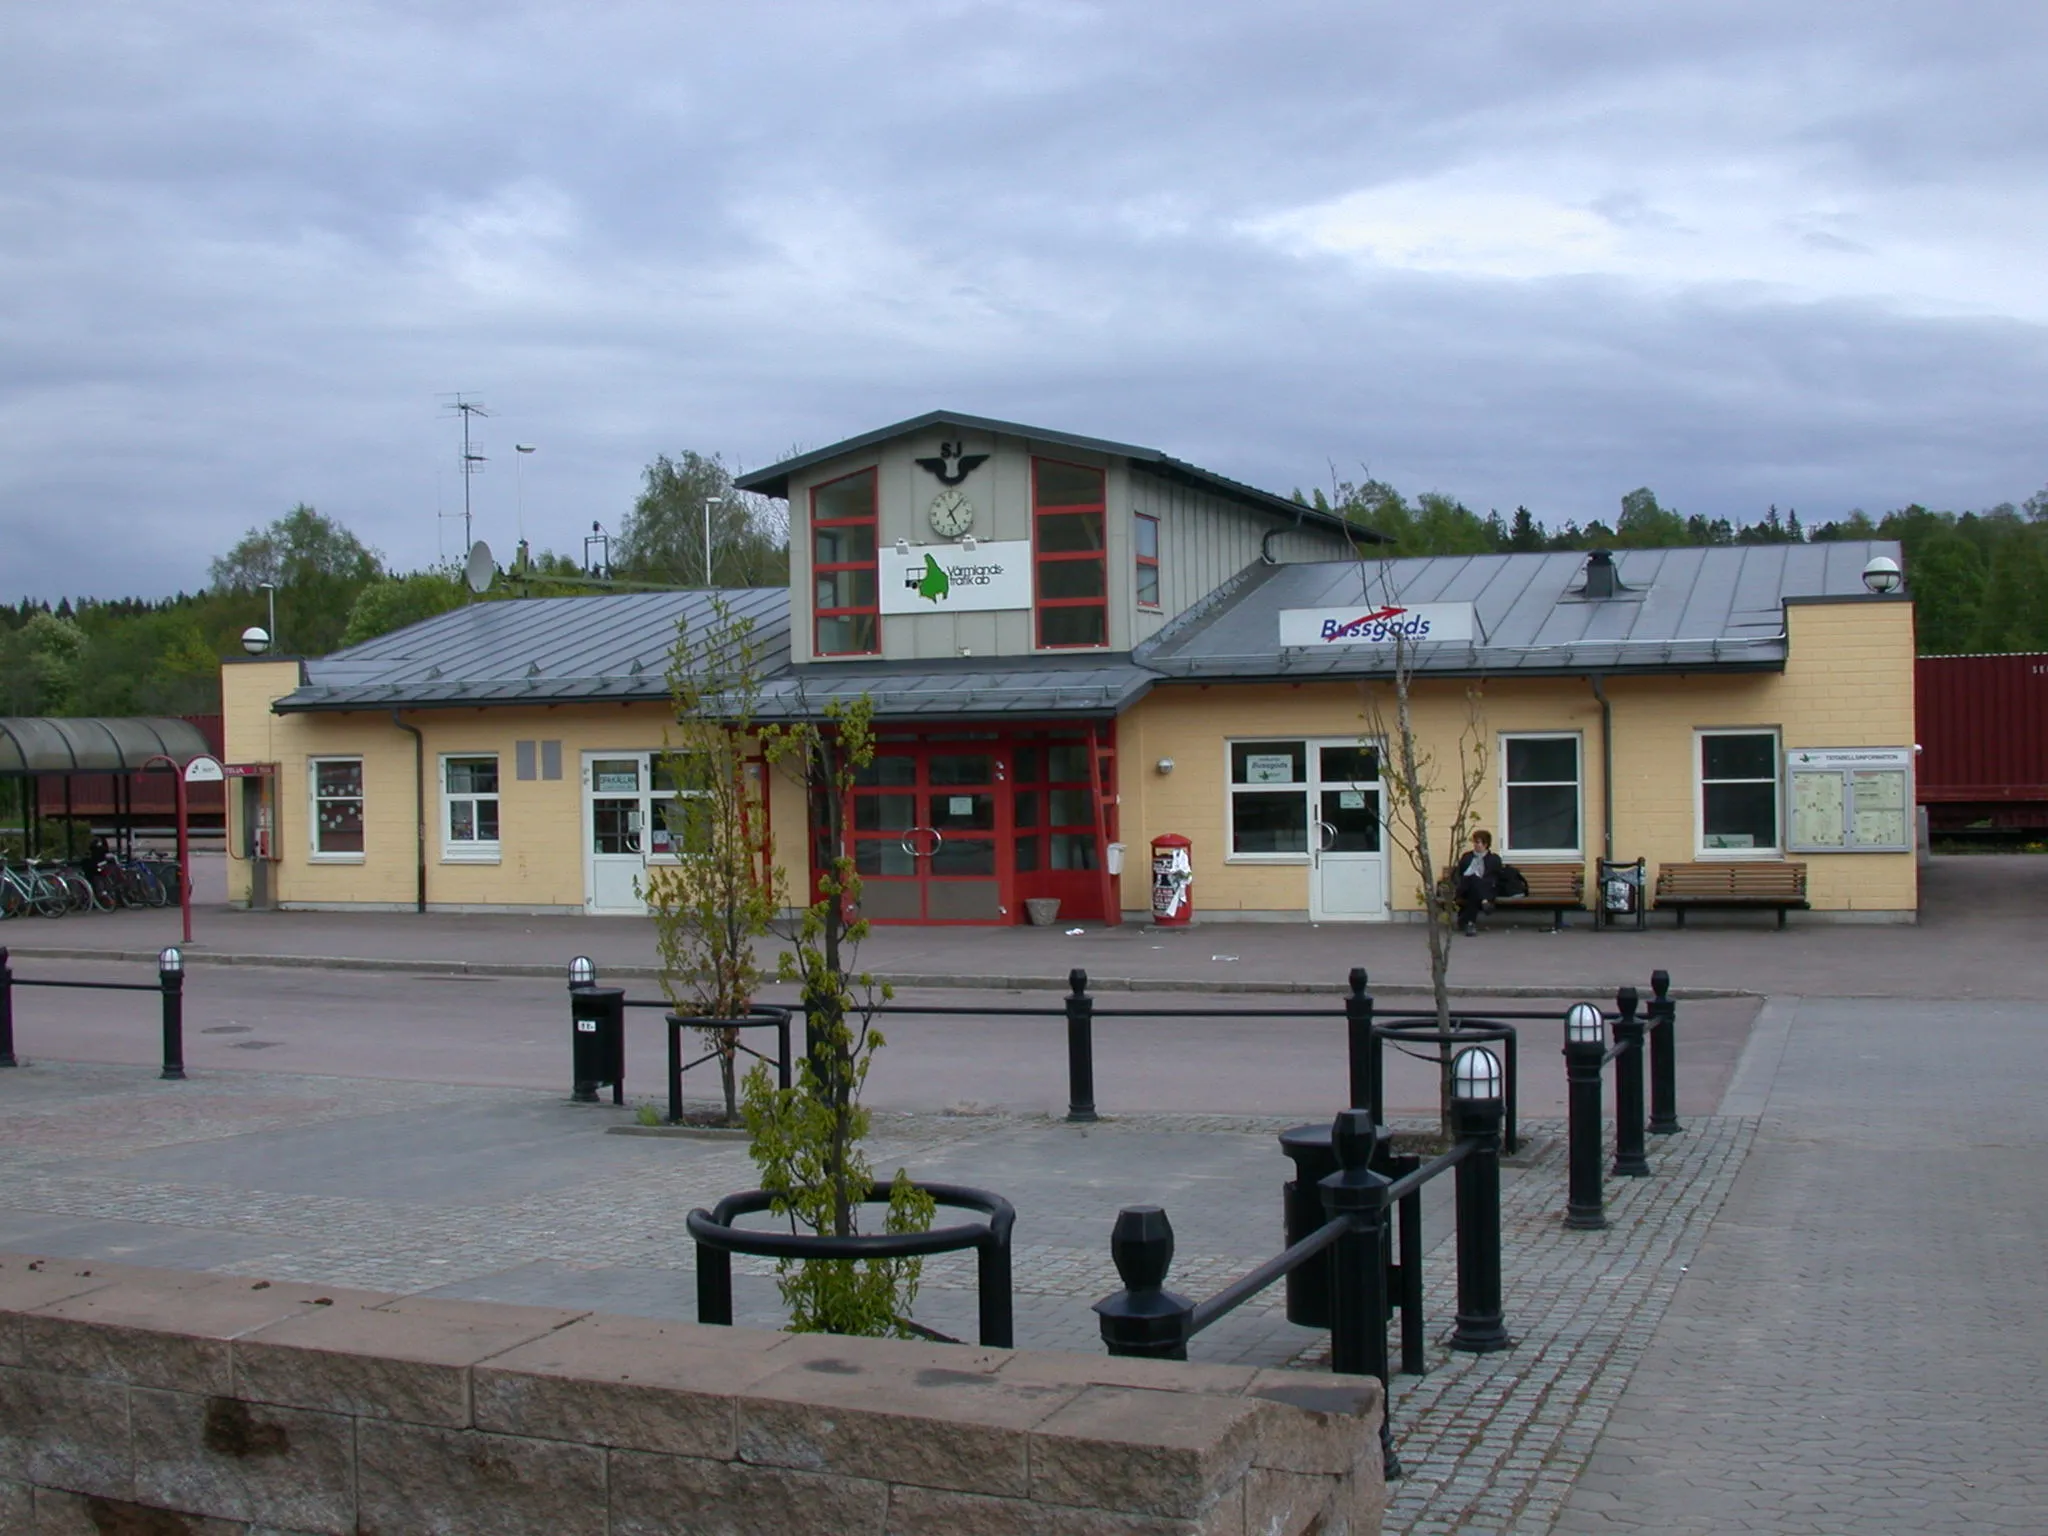 Photo showing: Grums railway station, Grums, Sweden. Photo by Riggwelter, May 20, 2006.

Seit 1. Mai 2010 befindet sich im ehemaligen Bahnhofsgebäude nun die neue Vårdcentrale (Ärztehaus).